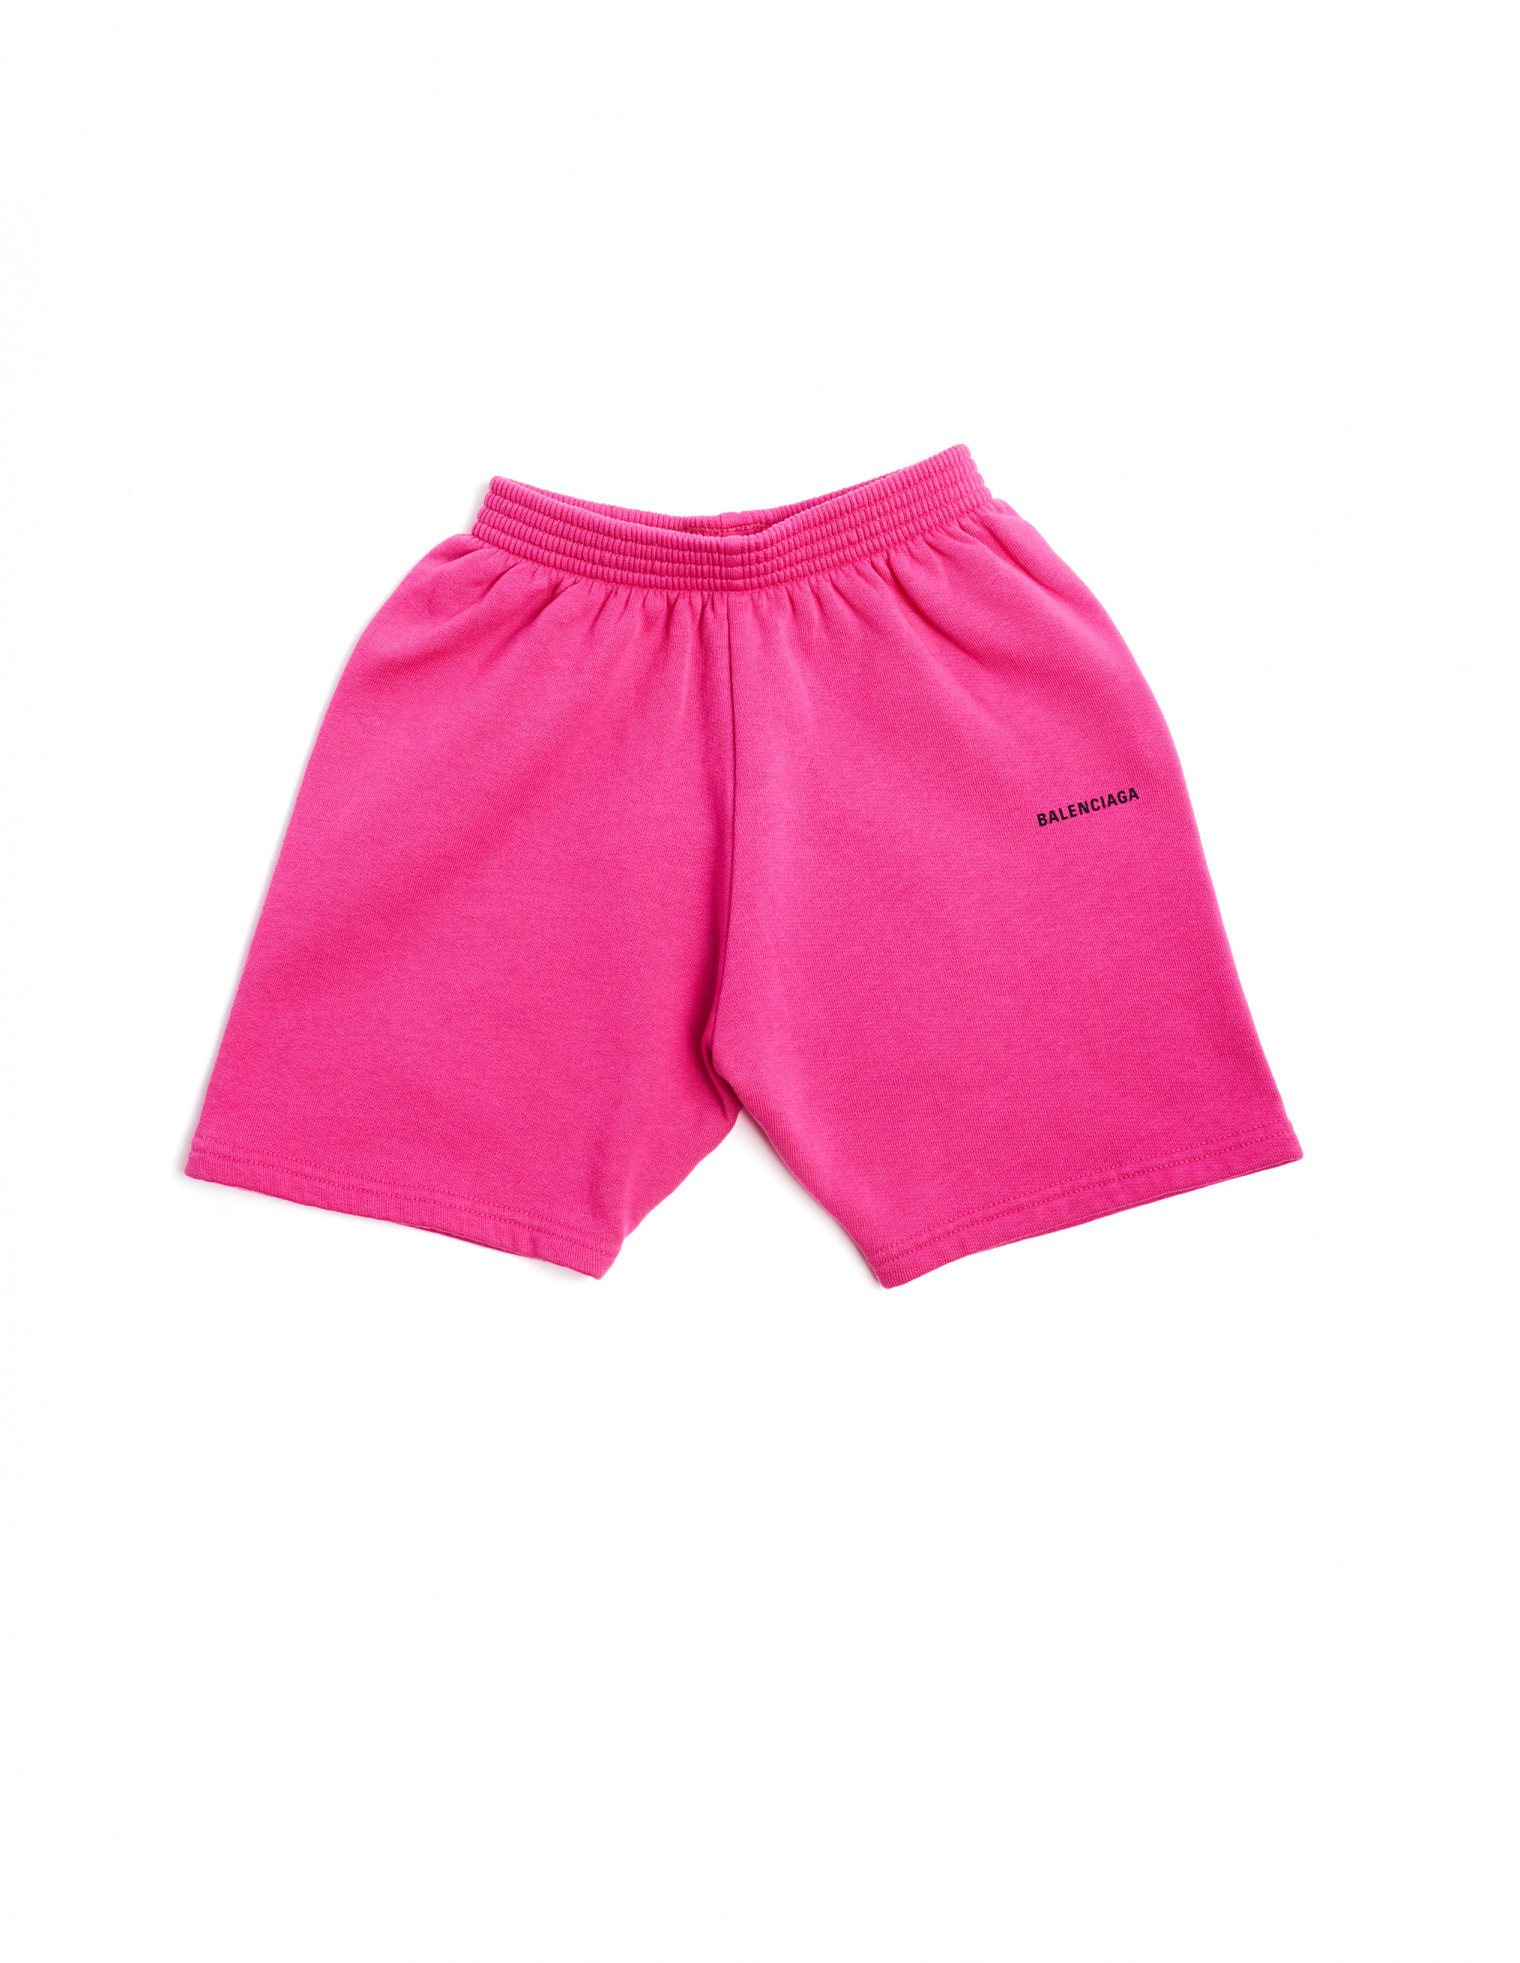 Balenciaga Kids Shorts